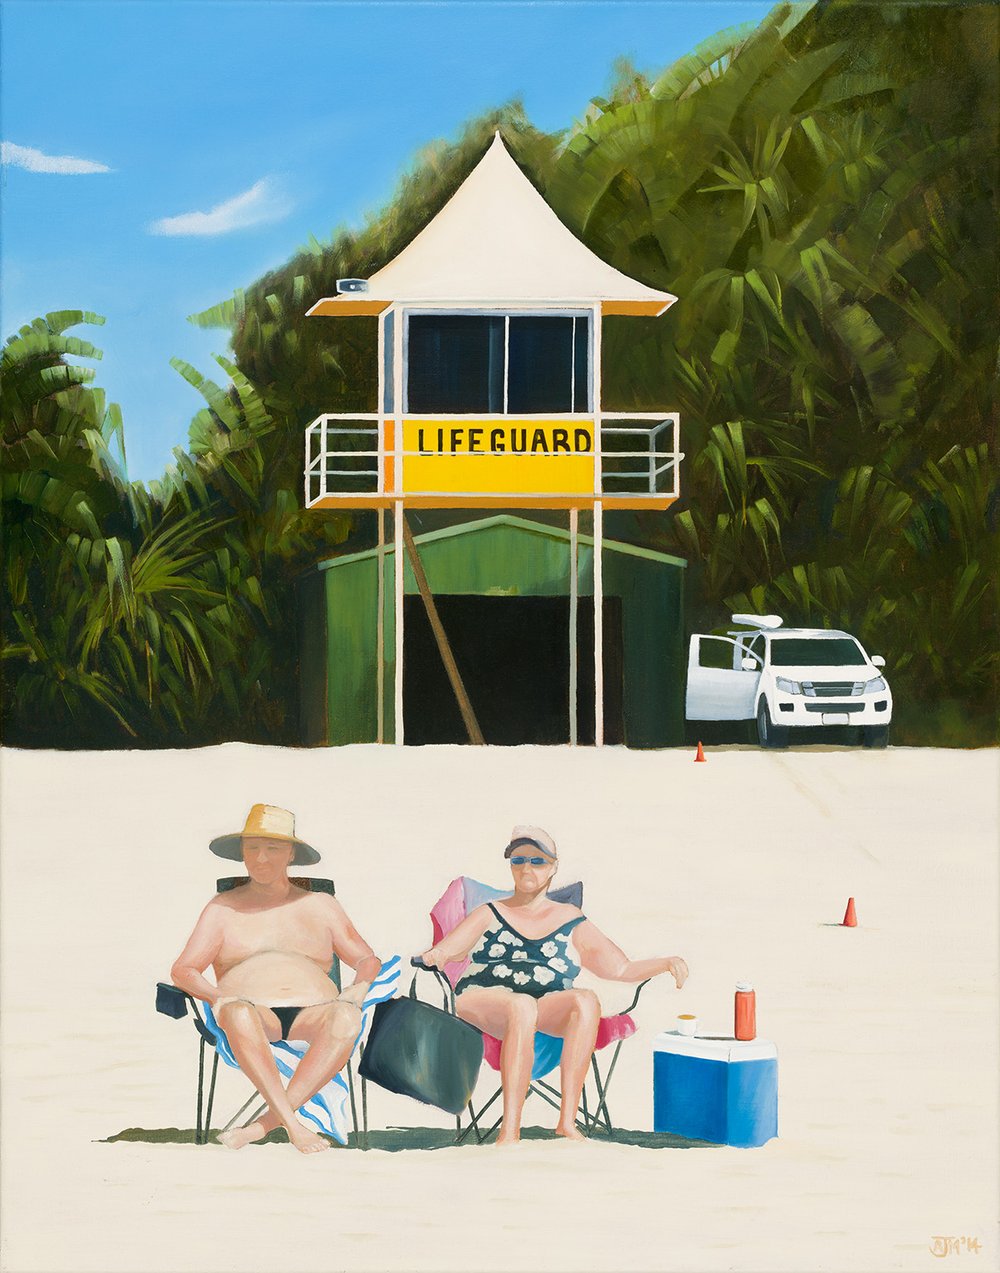 Lifeguard by Alan McLintic